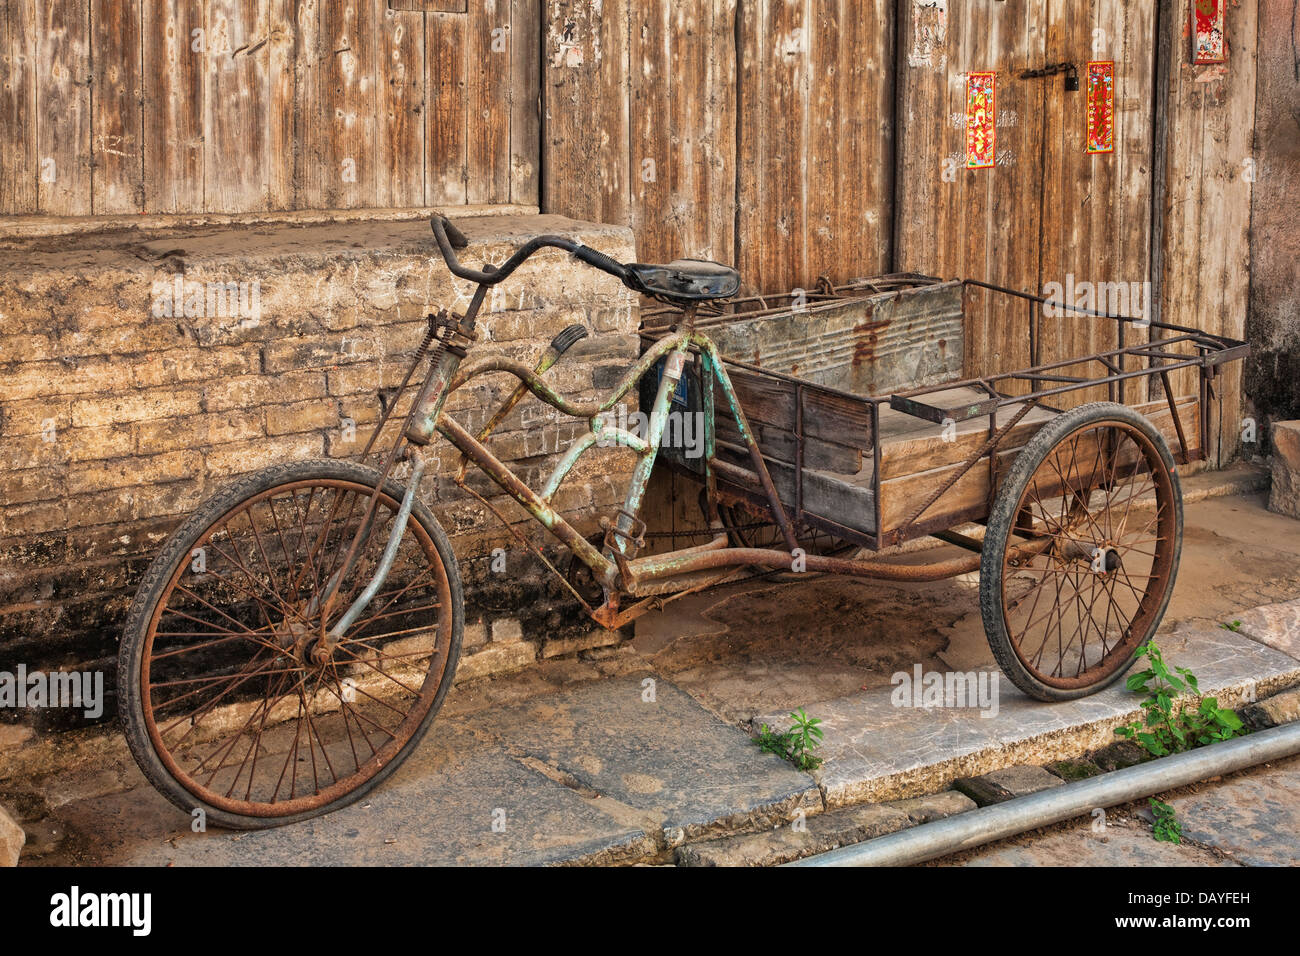 Une antique bicyclette dans la vieille ville de Daxu. Ancienne ville Daxu a été formé au début de la dynastie des Song. Banque D'Images